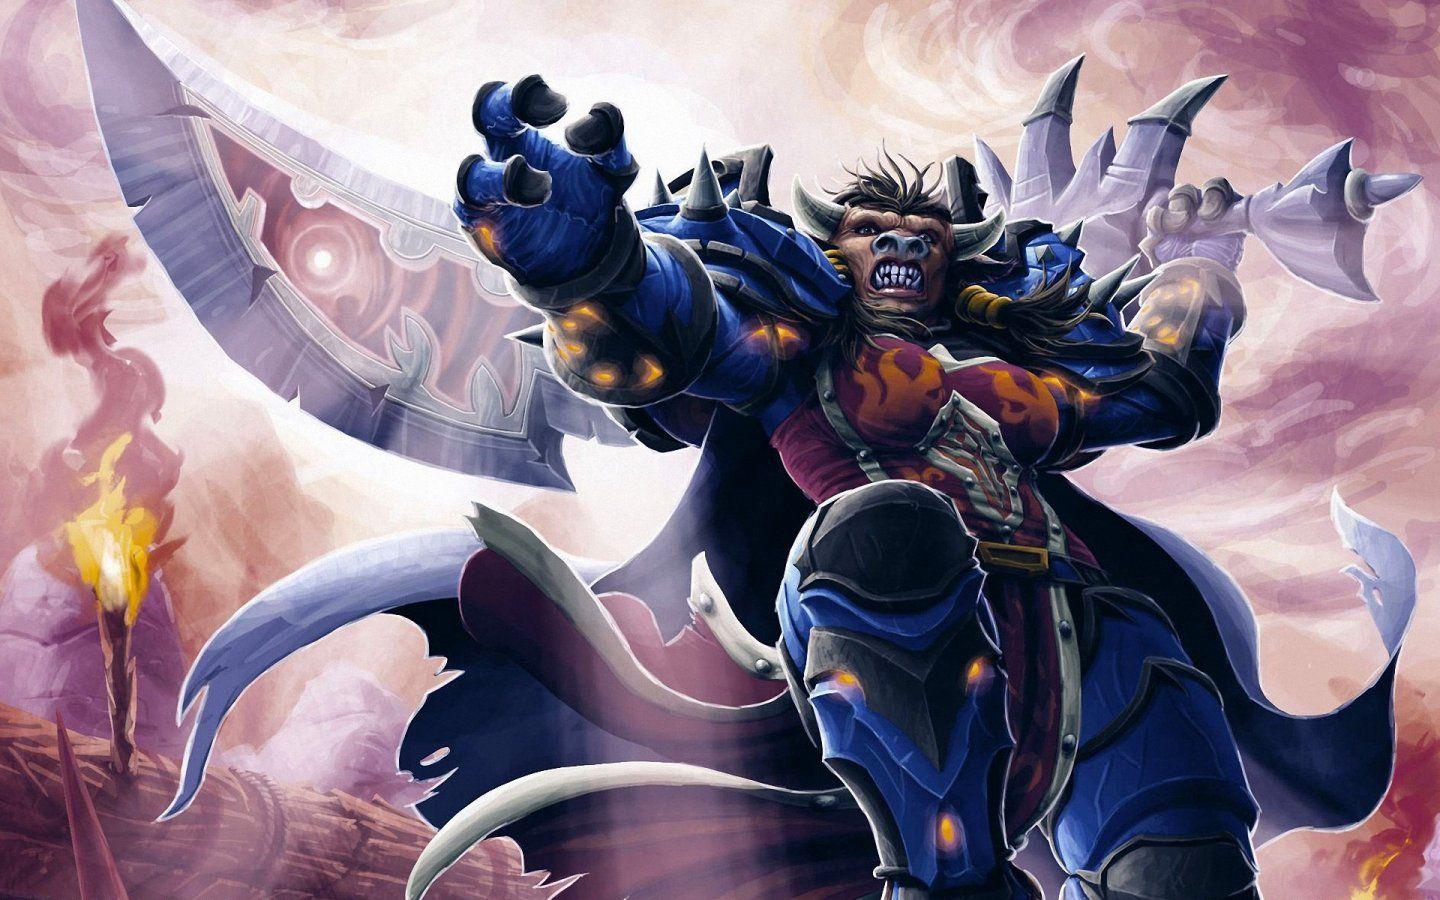 World of Warcraft Tauren 1440x900 Wallpaper, 1440x900 Wallpaper